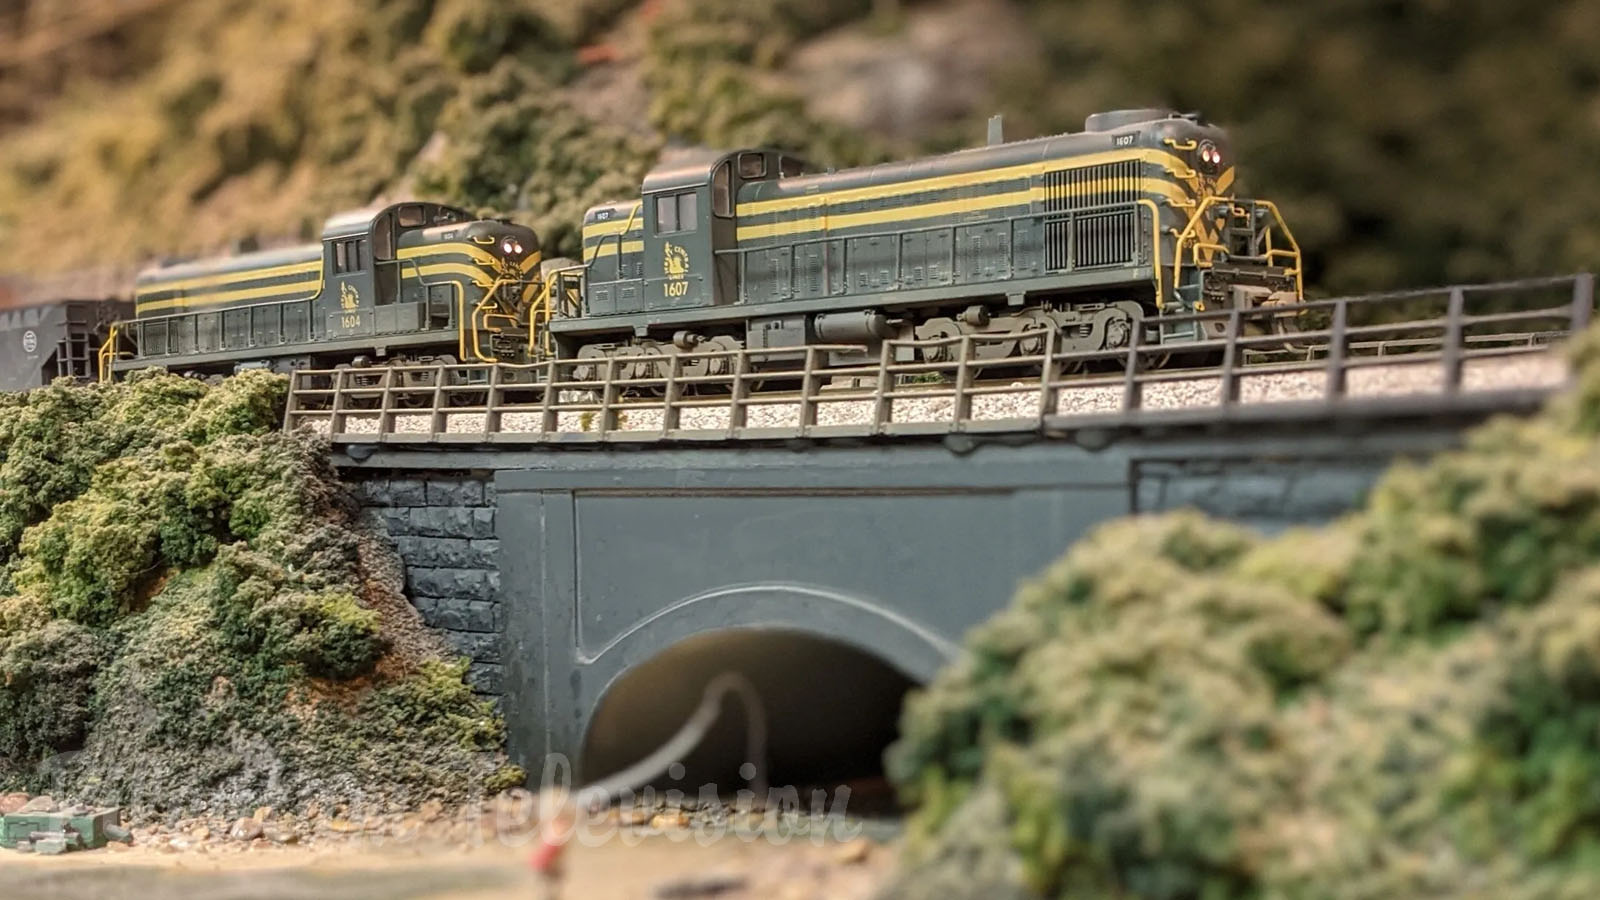 Uno dei più grandi plastici ferroviari degli Stati Uniti: Il museo del modellismo ferroviario Lehigh & Keystone Valley